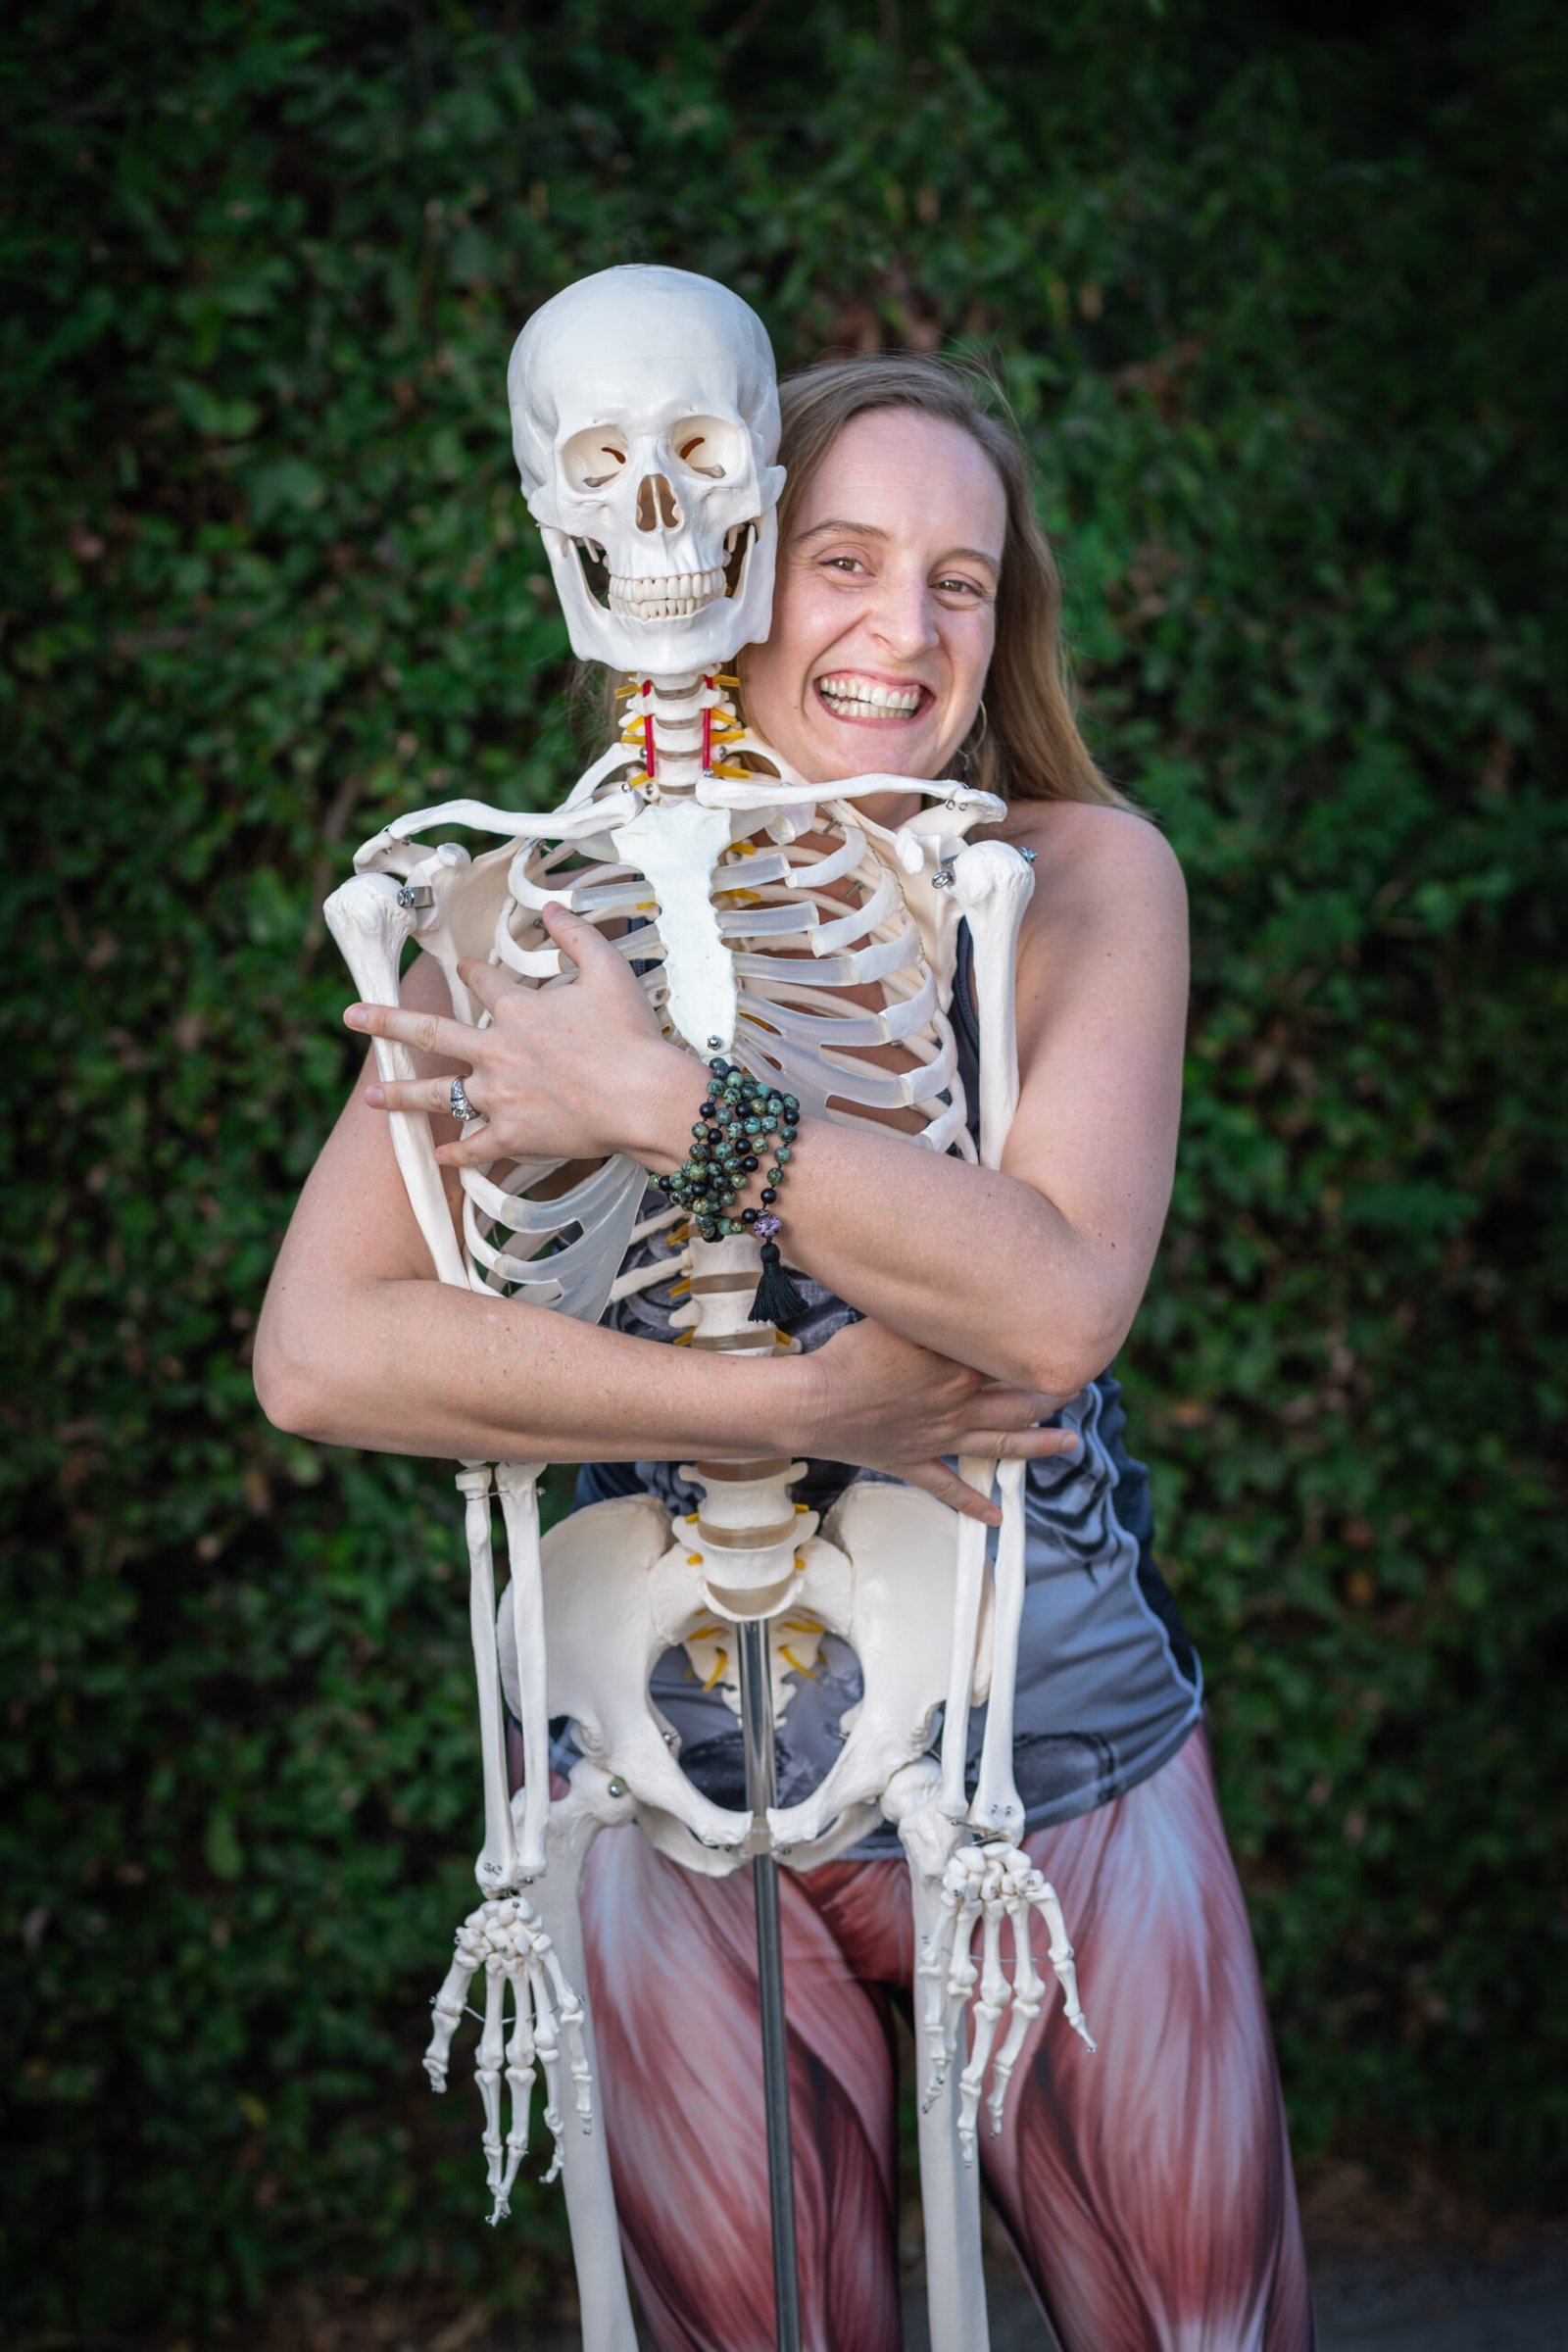 Charlotte hugging a model skeleton